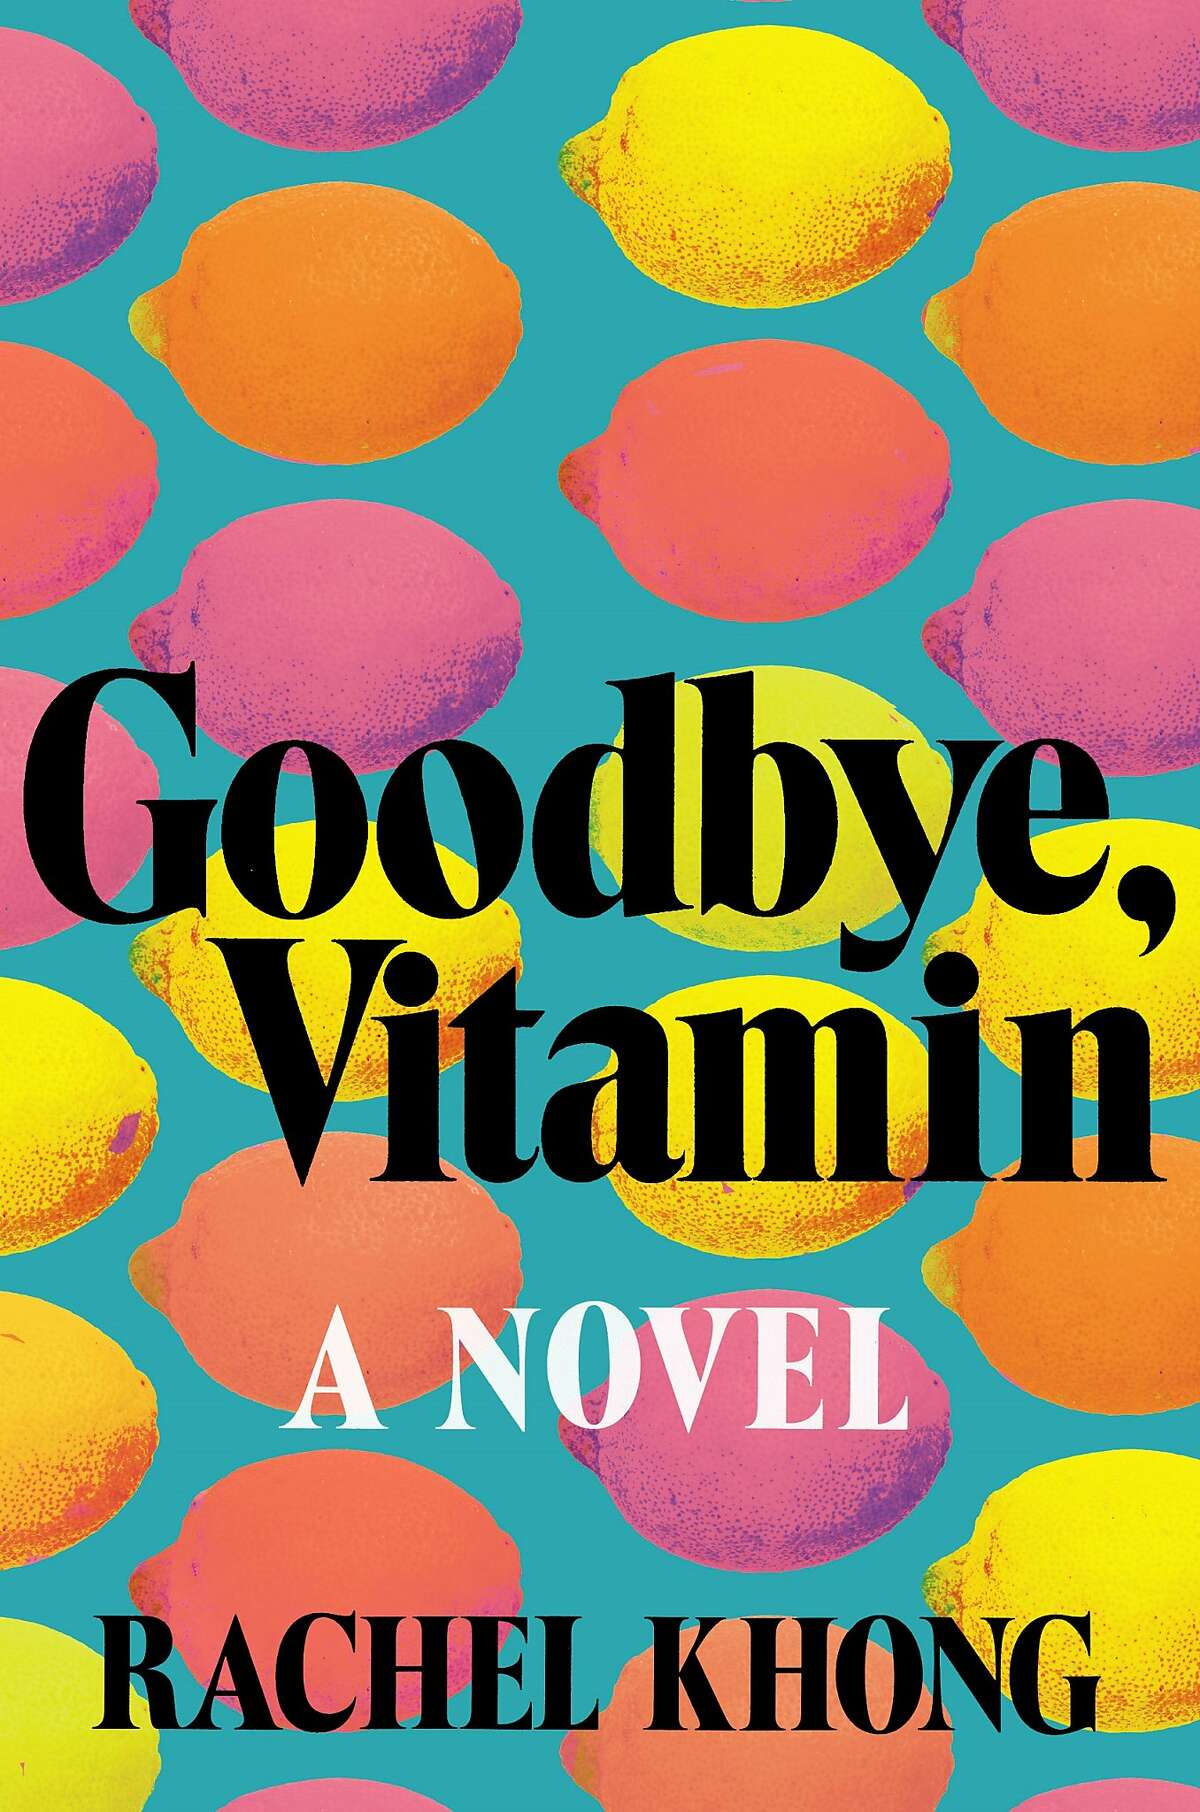 "Goodbye, Vitamin